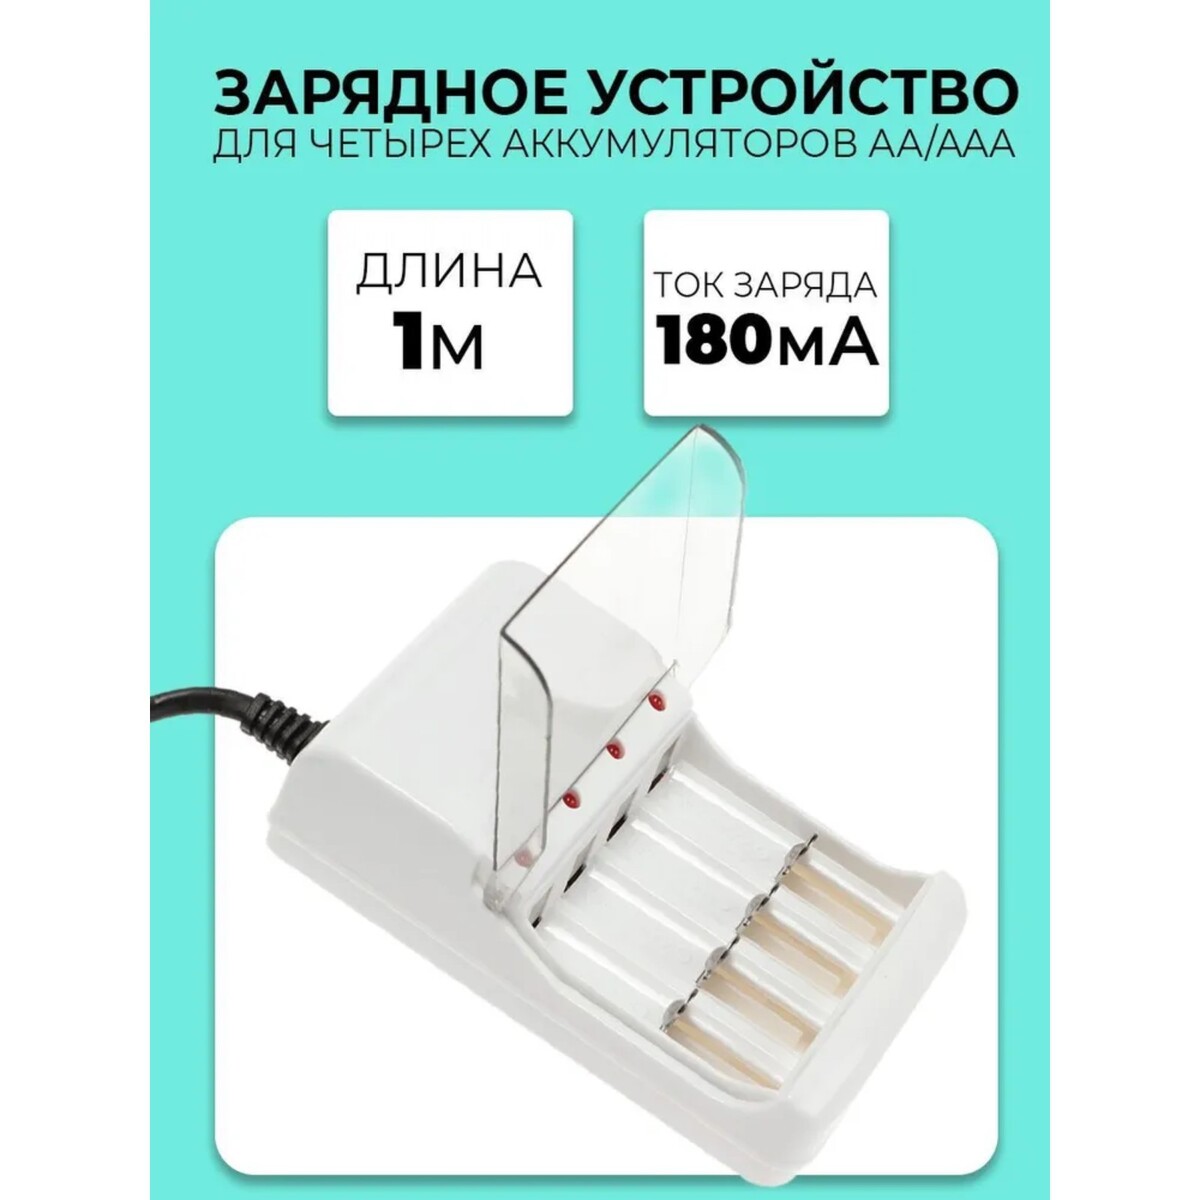 Зарядное устройство для четырех аккумуляторов аа или ааа chr-56, 1 м,ток заряда 180 ма,белое автомобильное зарядное устройство pero ac04 2usb 2 4a automax белое